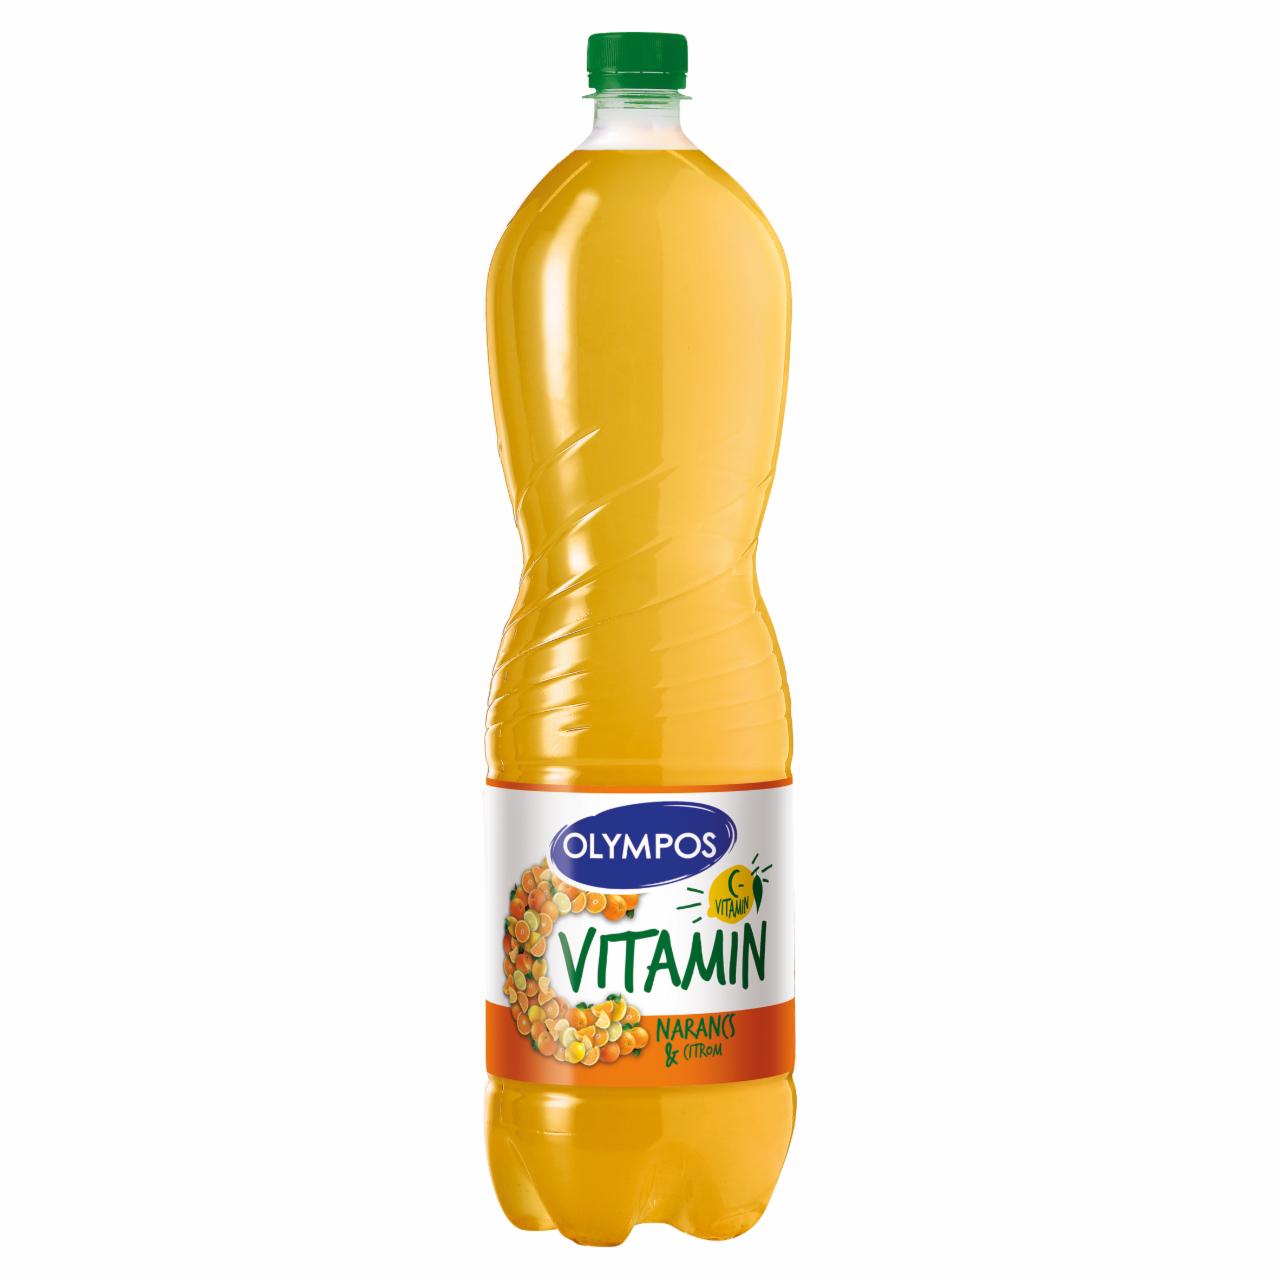 Képek - Olympos C vitamin narancs-citrom ital cukorral és édesítőszerekkel 1,5 l